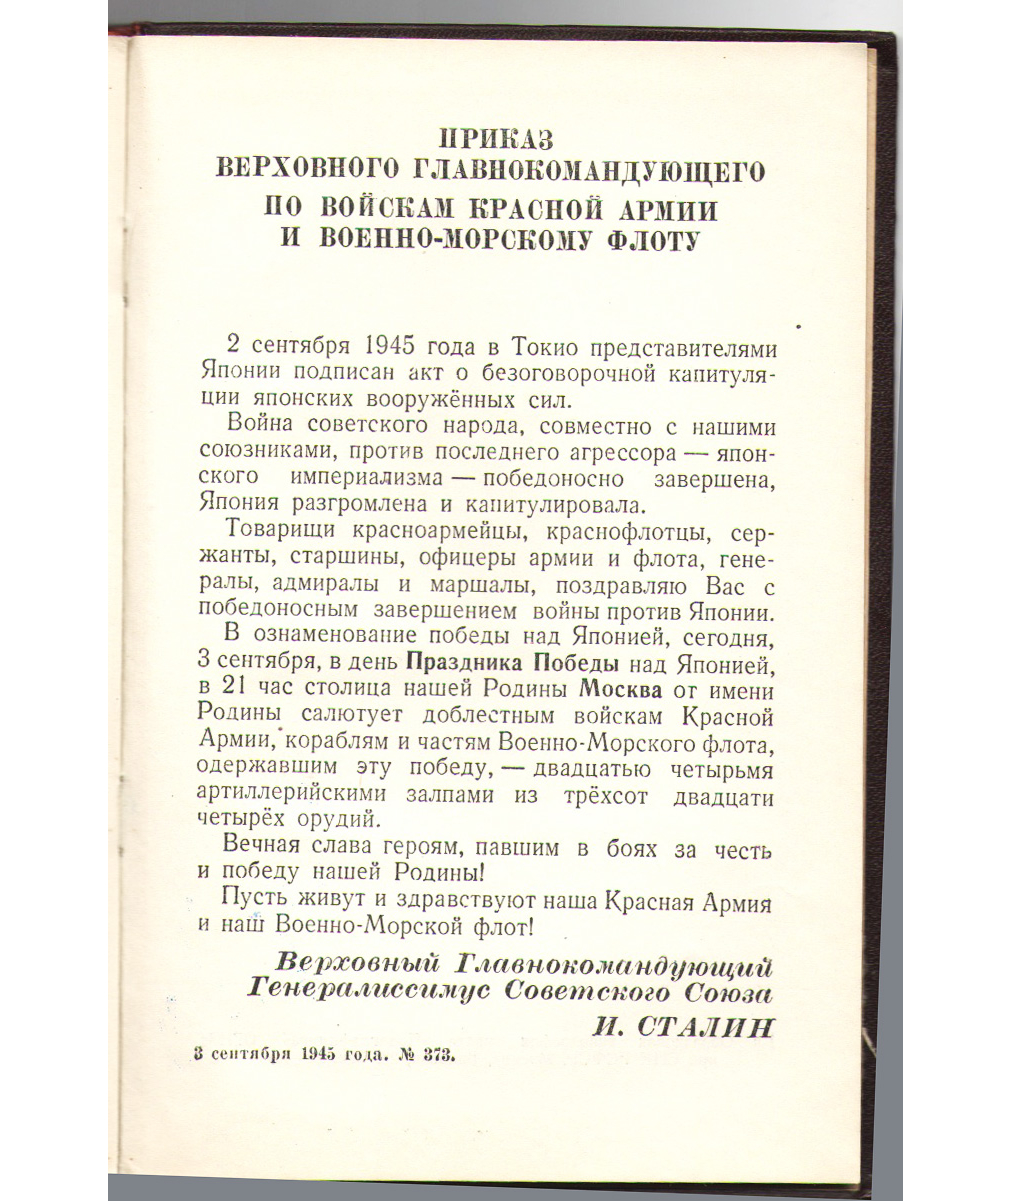 Сталин. О Великой Отечественной Войне Советского Союза, 1946г. 750-18